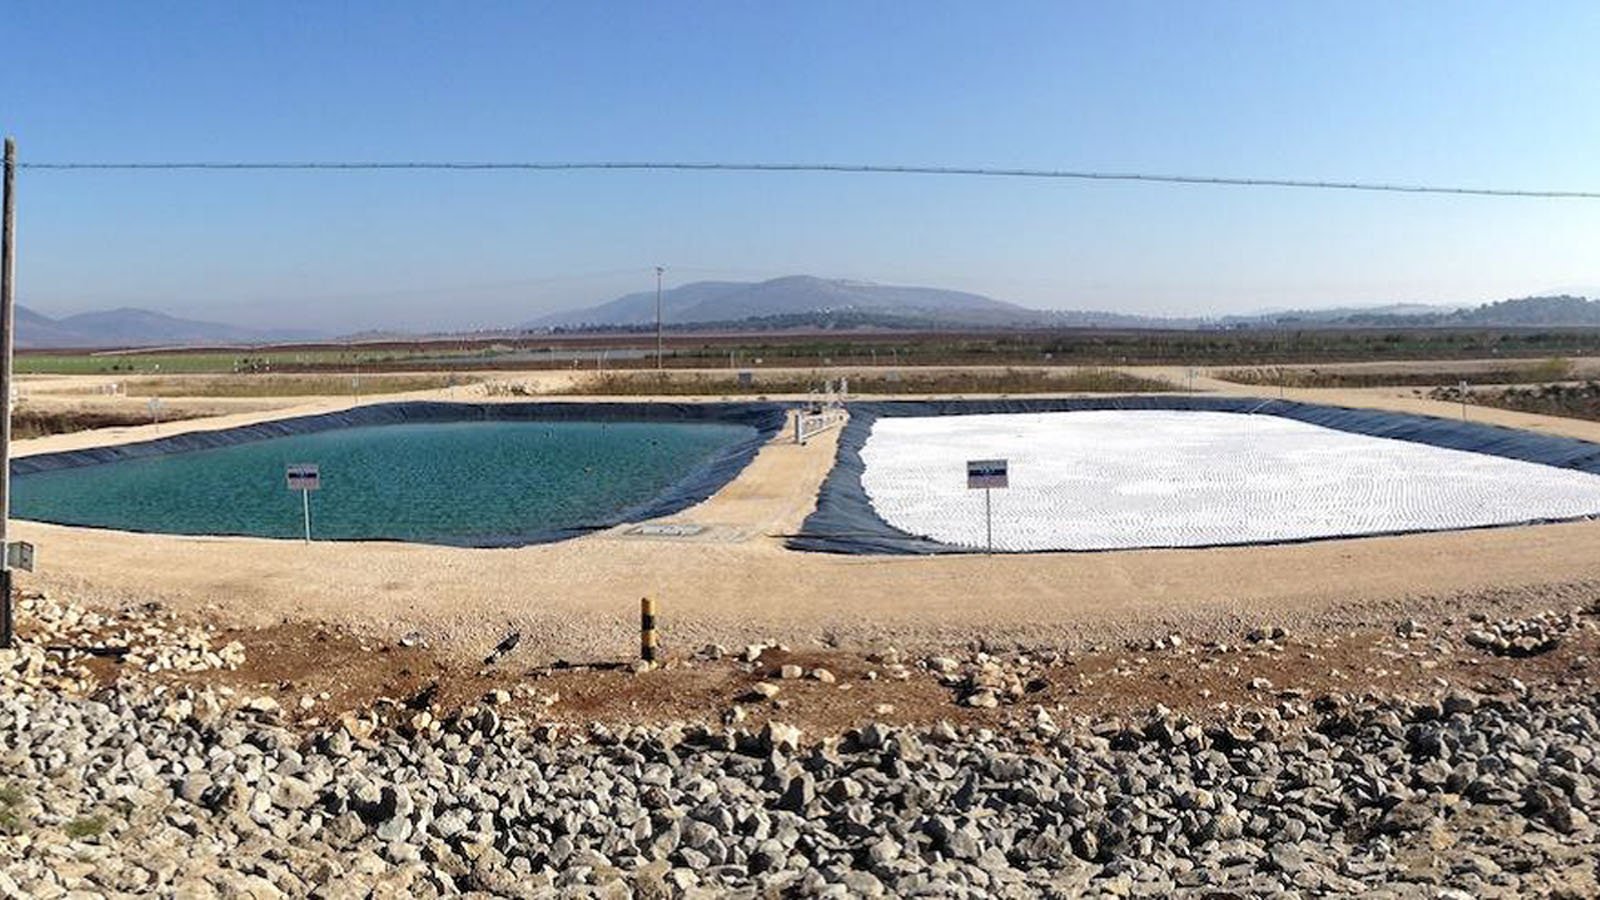 Bolas TopUp flotando en un embalse de agua en Eshkol. Foto cortesía de NeoTop Water Systems